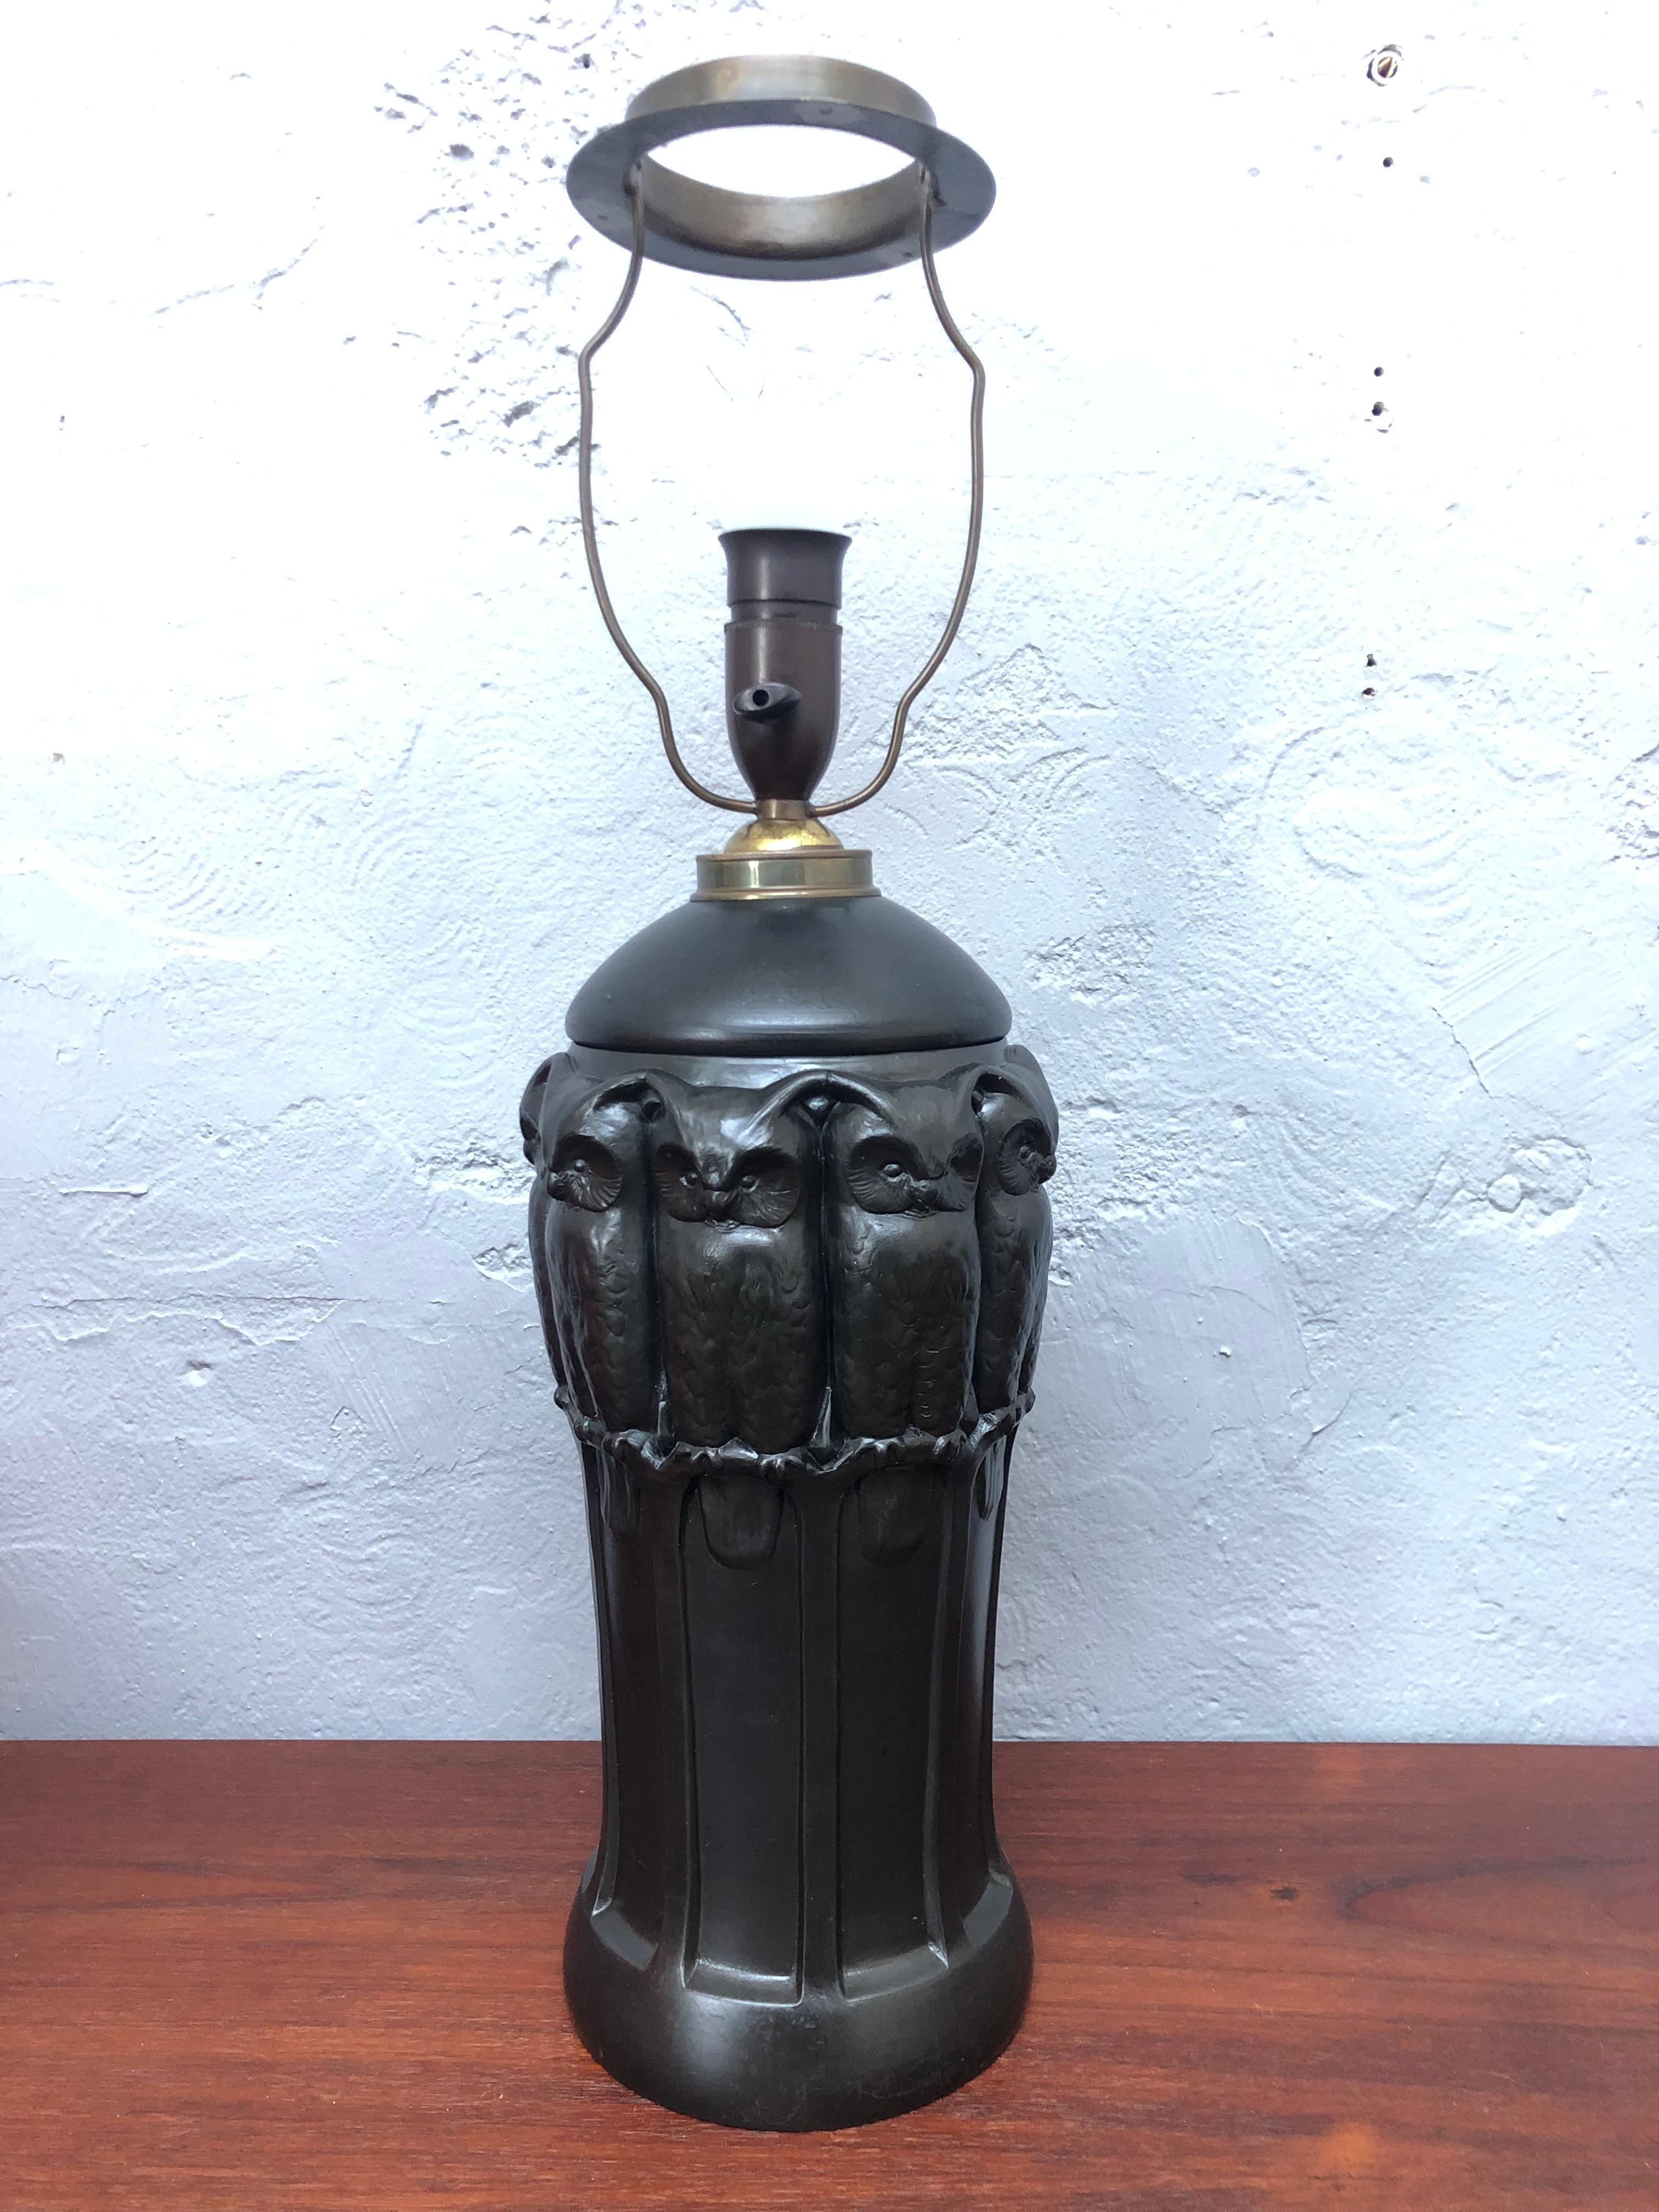 Eine erstaunliche, ikonische Tischlampe aus schwarzer Keramik mit Eulen von Lauritz Adolph Hjorth aus Bornholm, Dänemark. 
Die Lampe wurde mit einem schwarzen, gedrehten Stoffkabel neu verkabelt und an der Stelle isoliert, an der es durch den